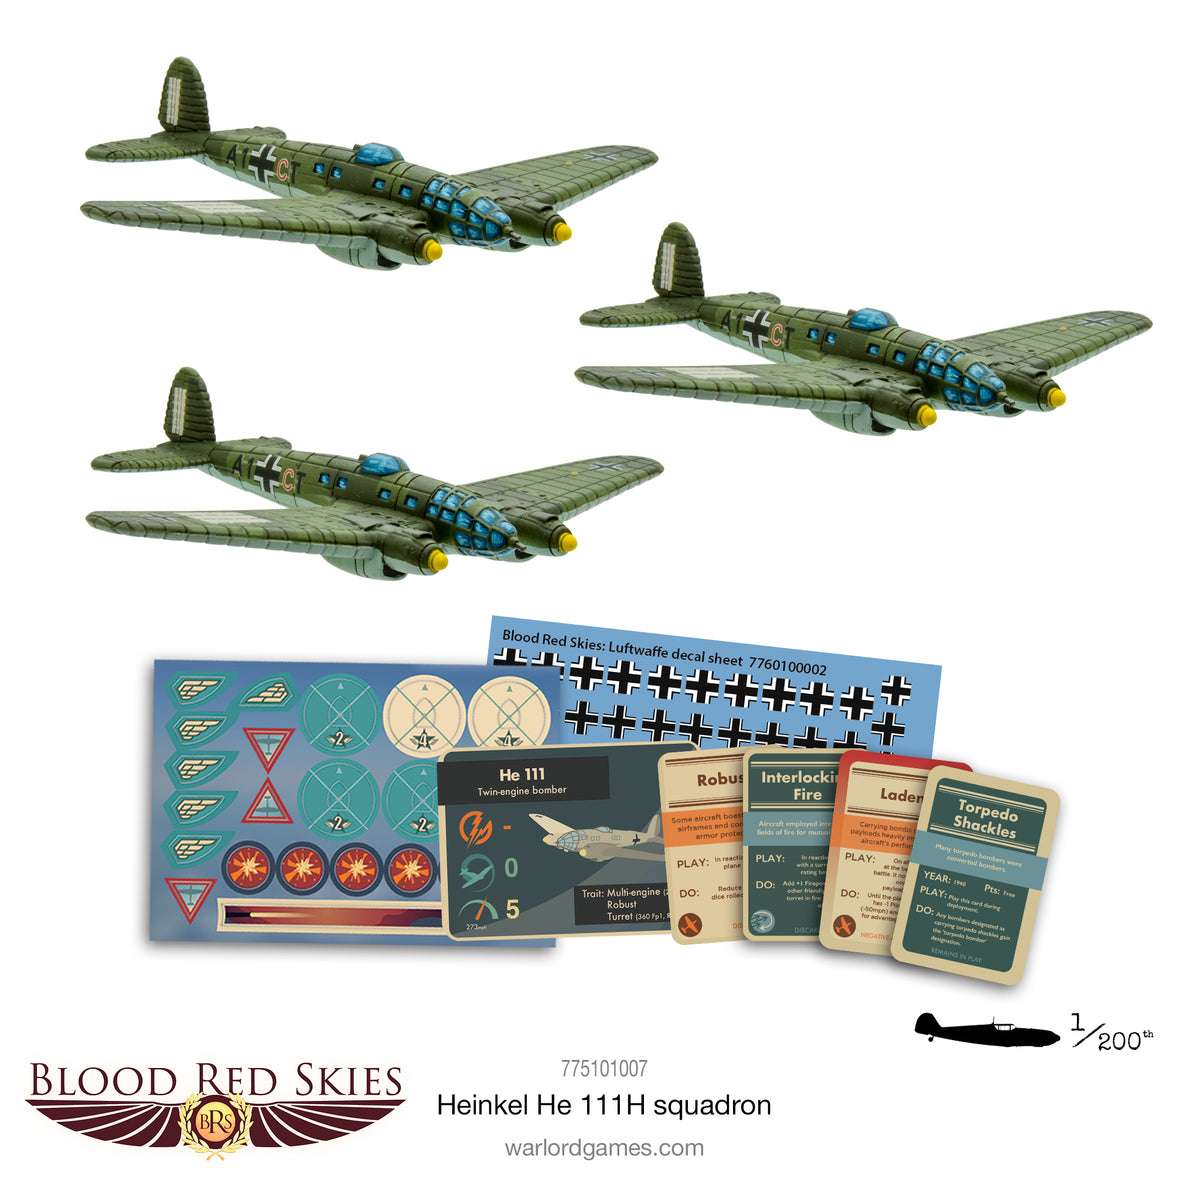 Blood Red Skies Heinkel He 111H squadron